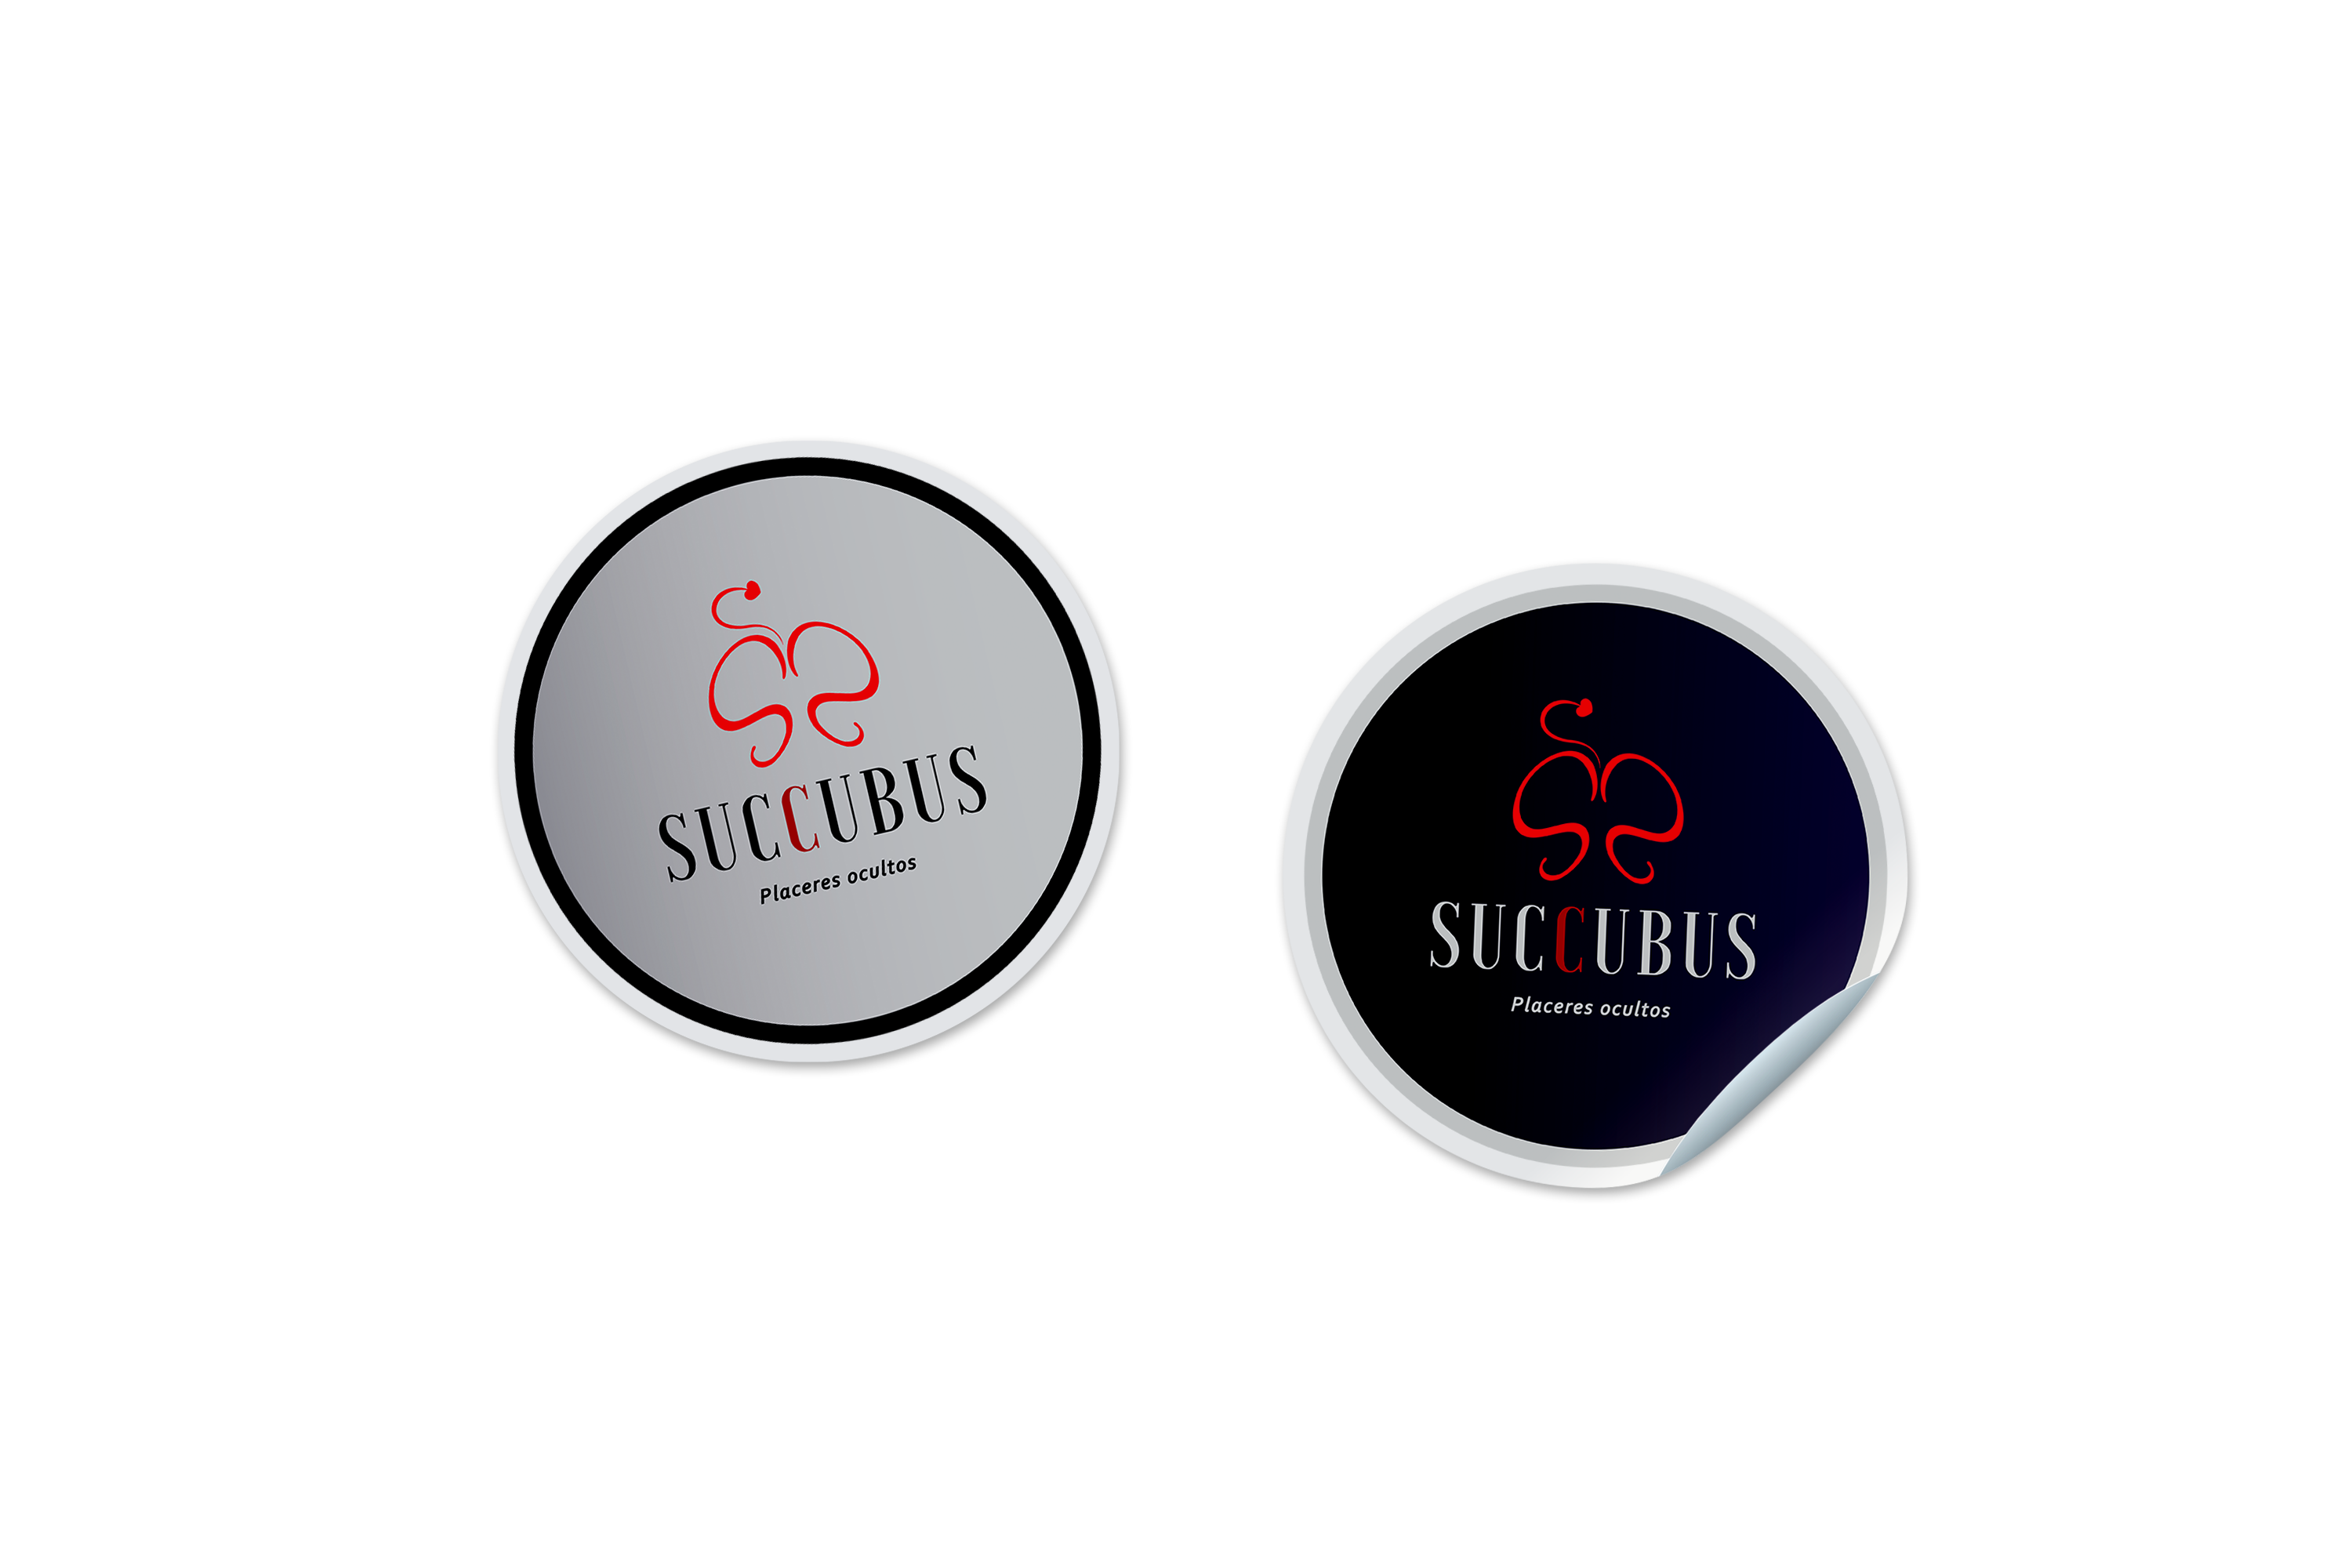 Pegatinas del logo de Succubus representando en fondo oscuro y claro.